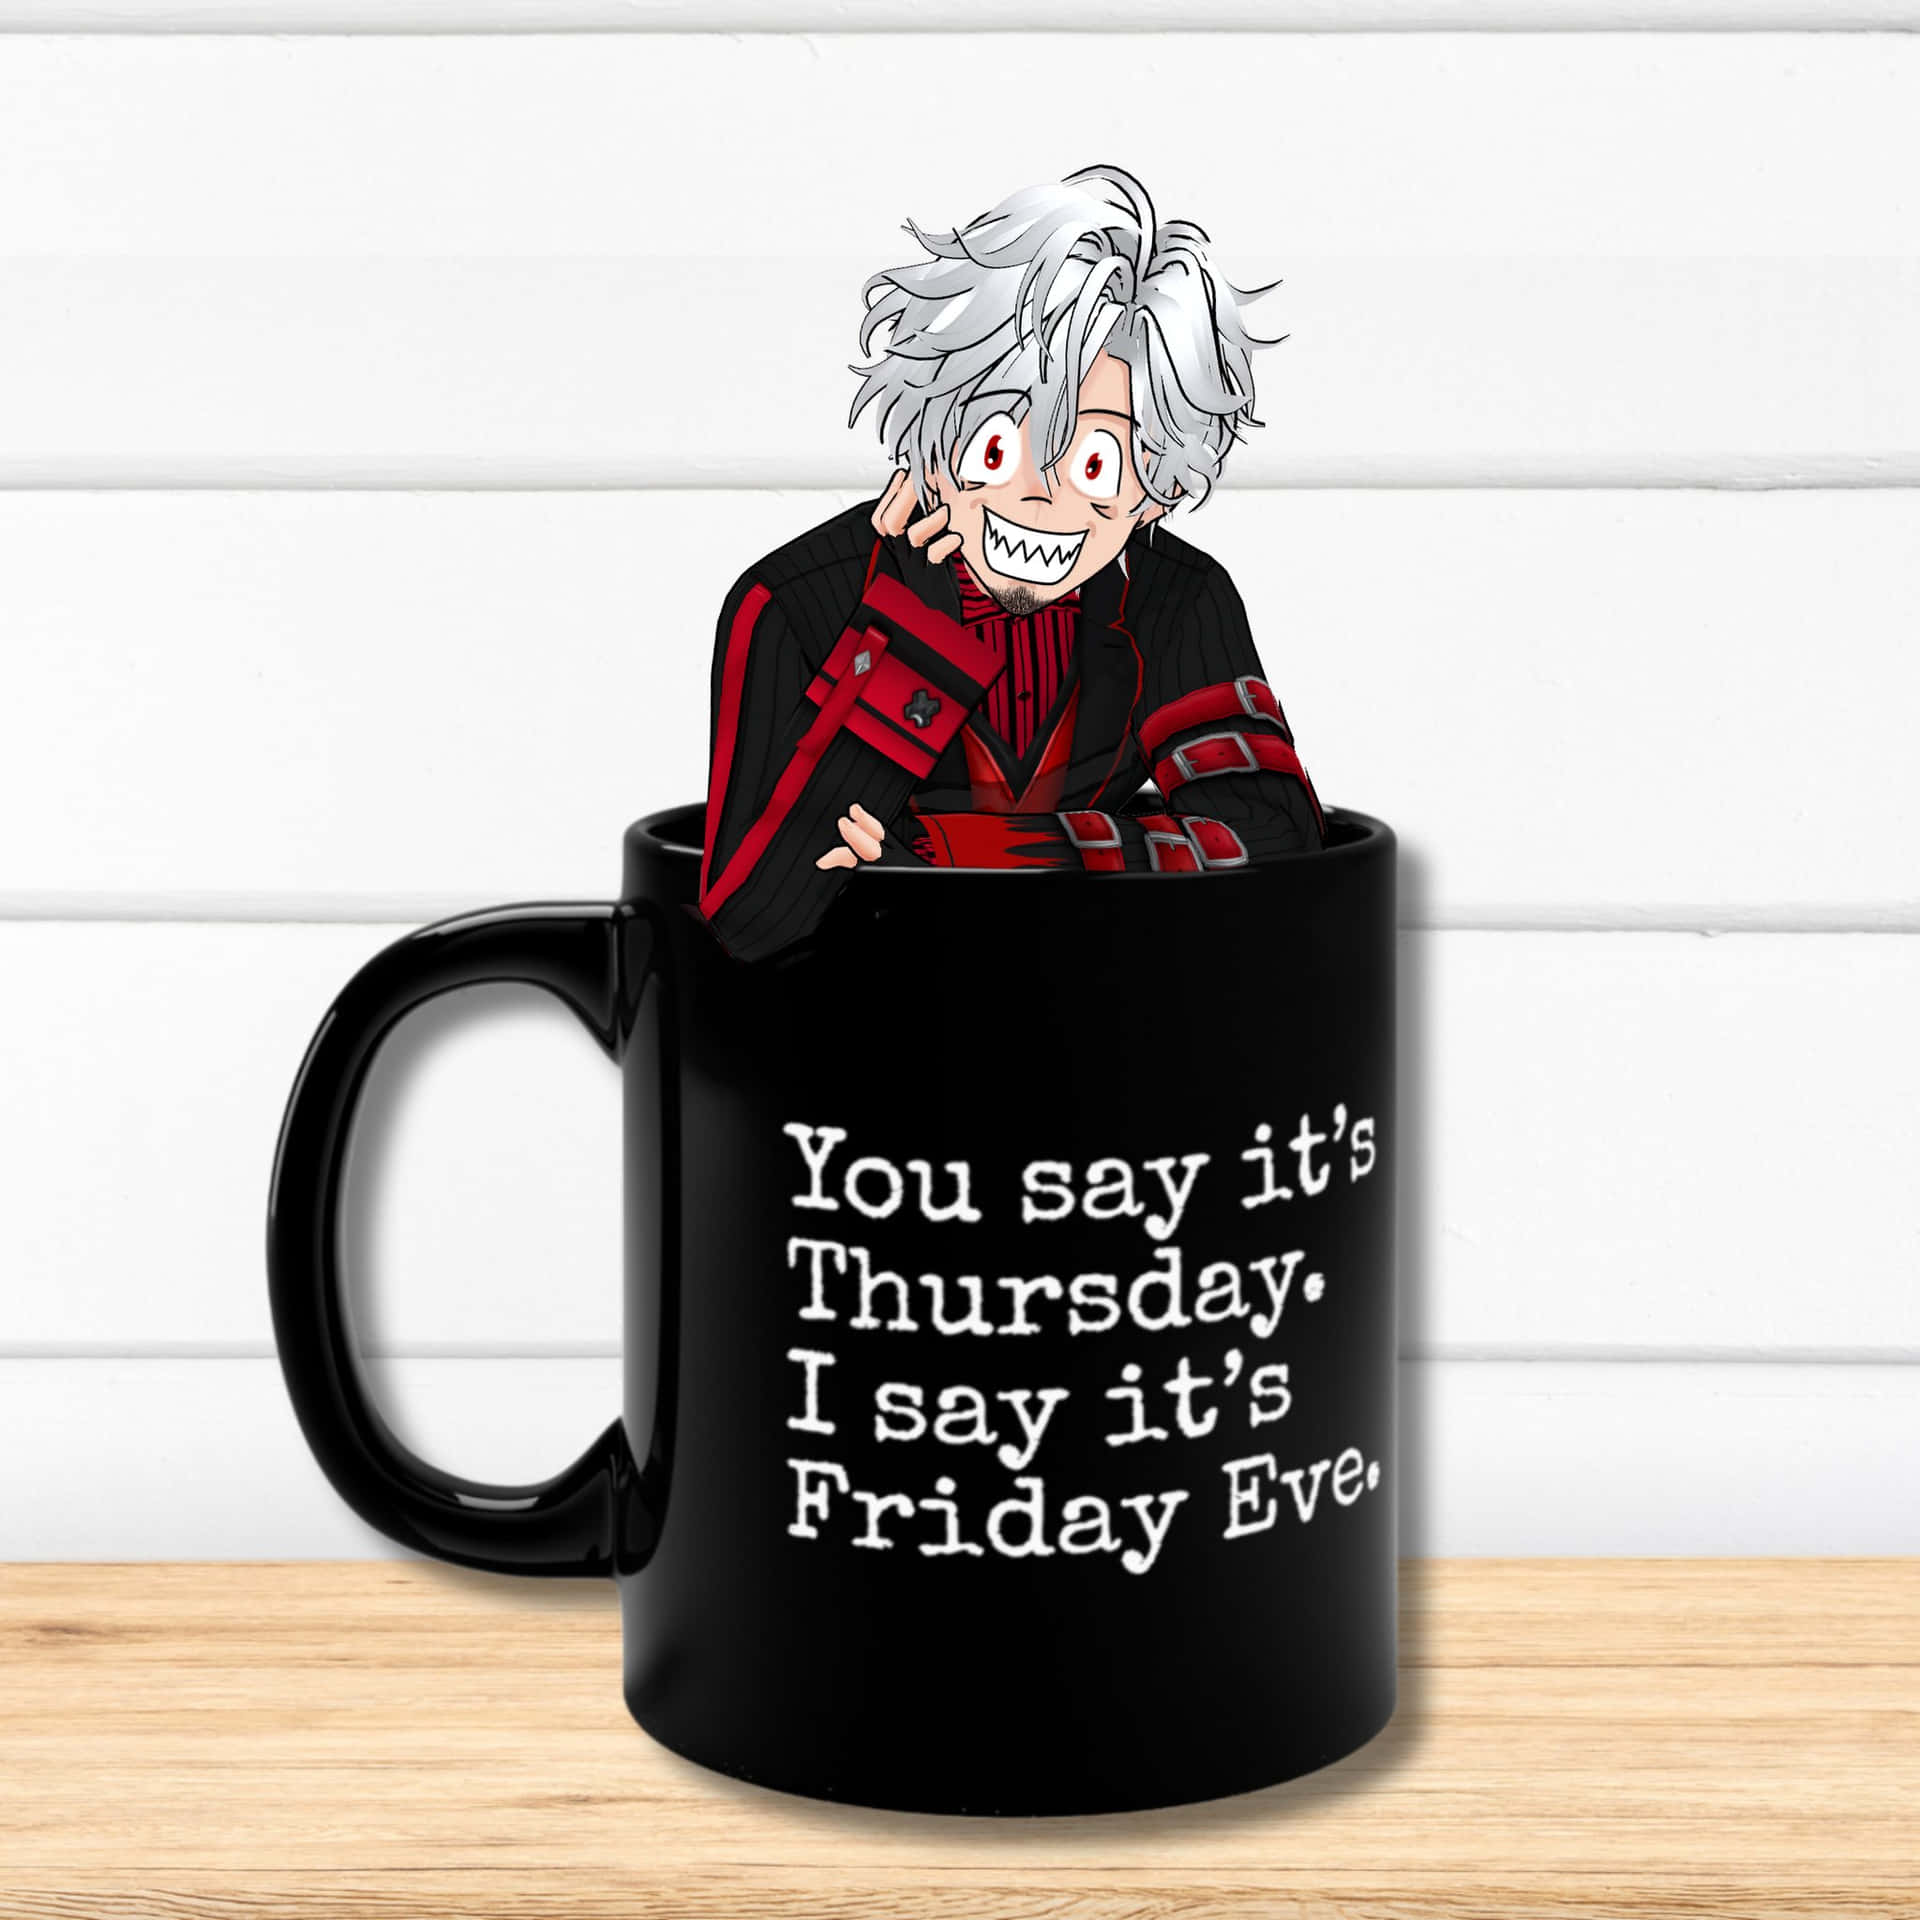 Friday Eve Anime Mug Wallpaper